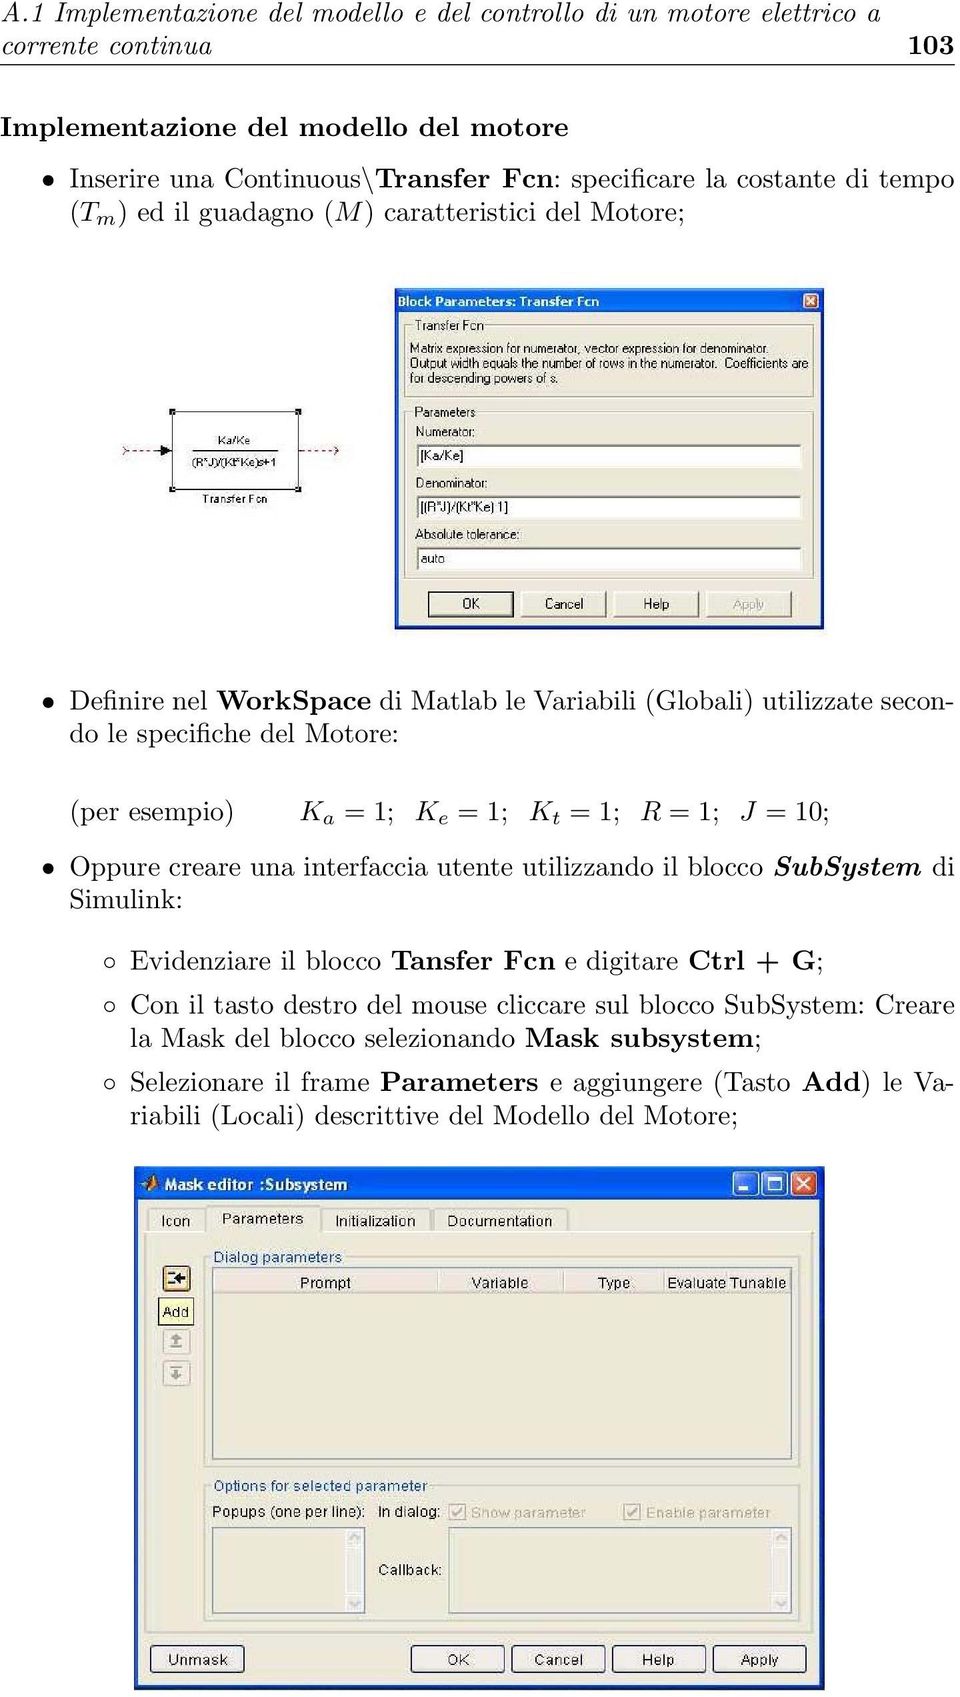 K e =1; K t =1; R =1; J = 10; Oppure creare una interfaccia utente utilizzando il blocco SubSystem di Simulink: Evidenziare il blocco Tansfer Fcn e digitare Ctrl+G; Con il tasto destro del mouse